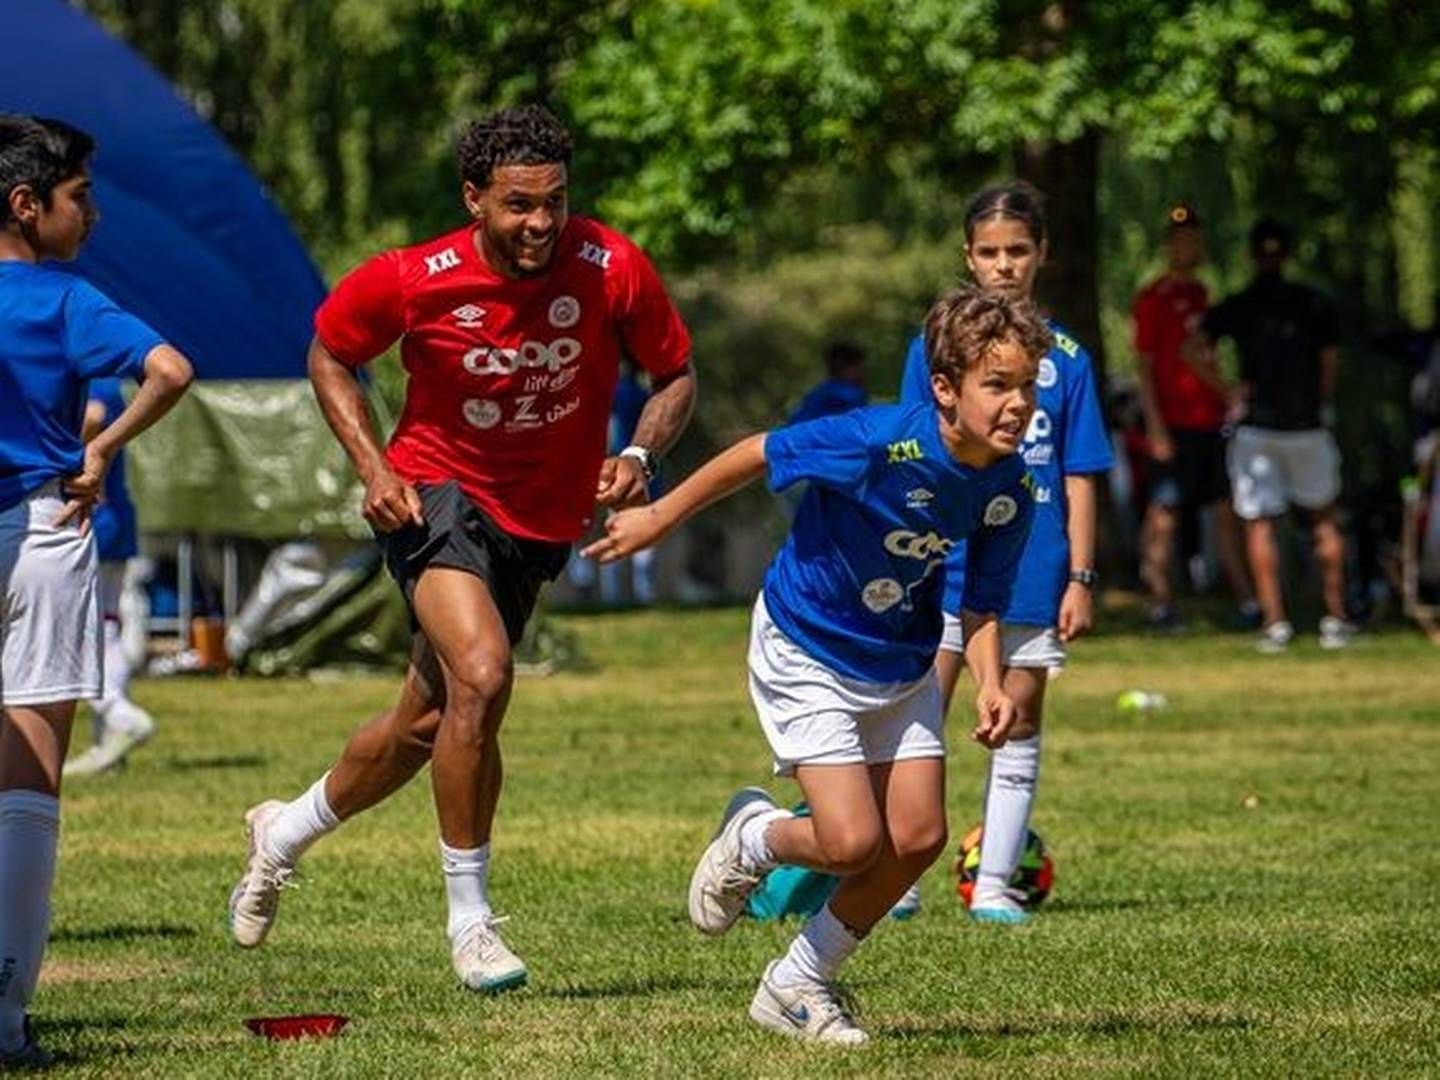 FOTBALLSKOLE : Mange barn får være med på fotballskole denne uka, som sportskjeden XXL er partner i sammen med fotballspilleren Joshua King. | Foto: XXL